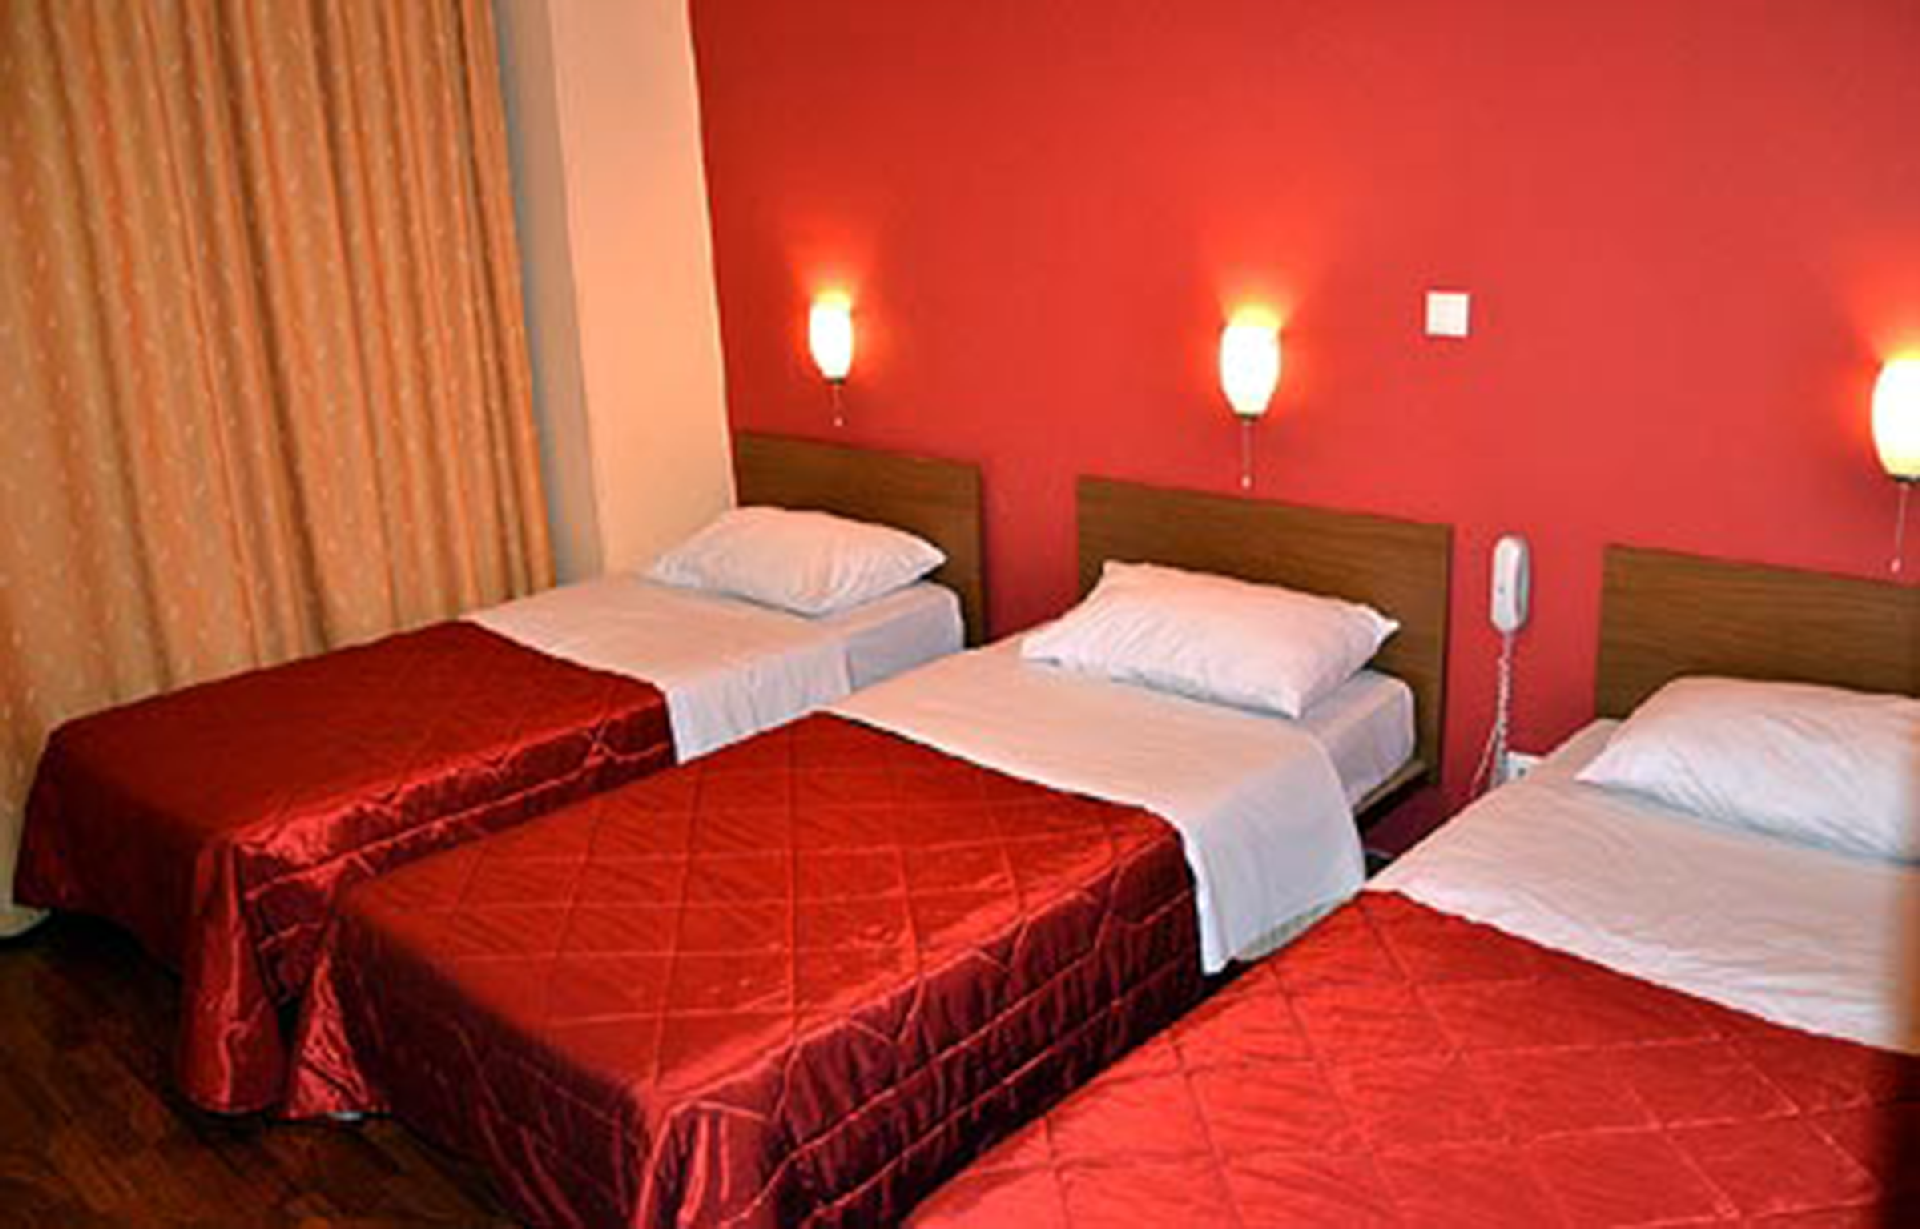 Gästezimmer für 3 Personen ca. 55 m² Ferienwohnung in Kroatien